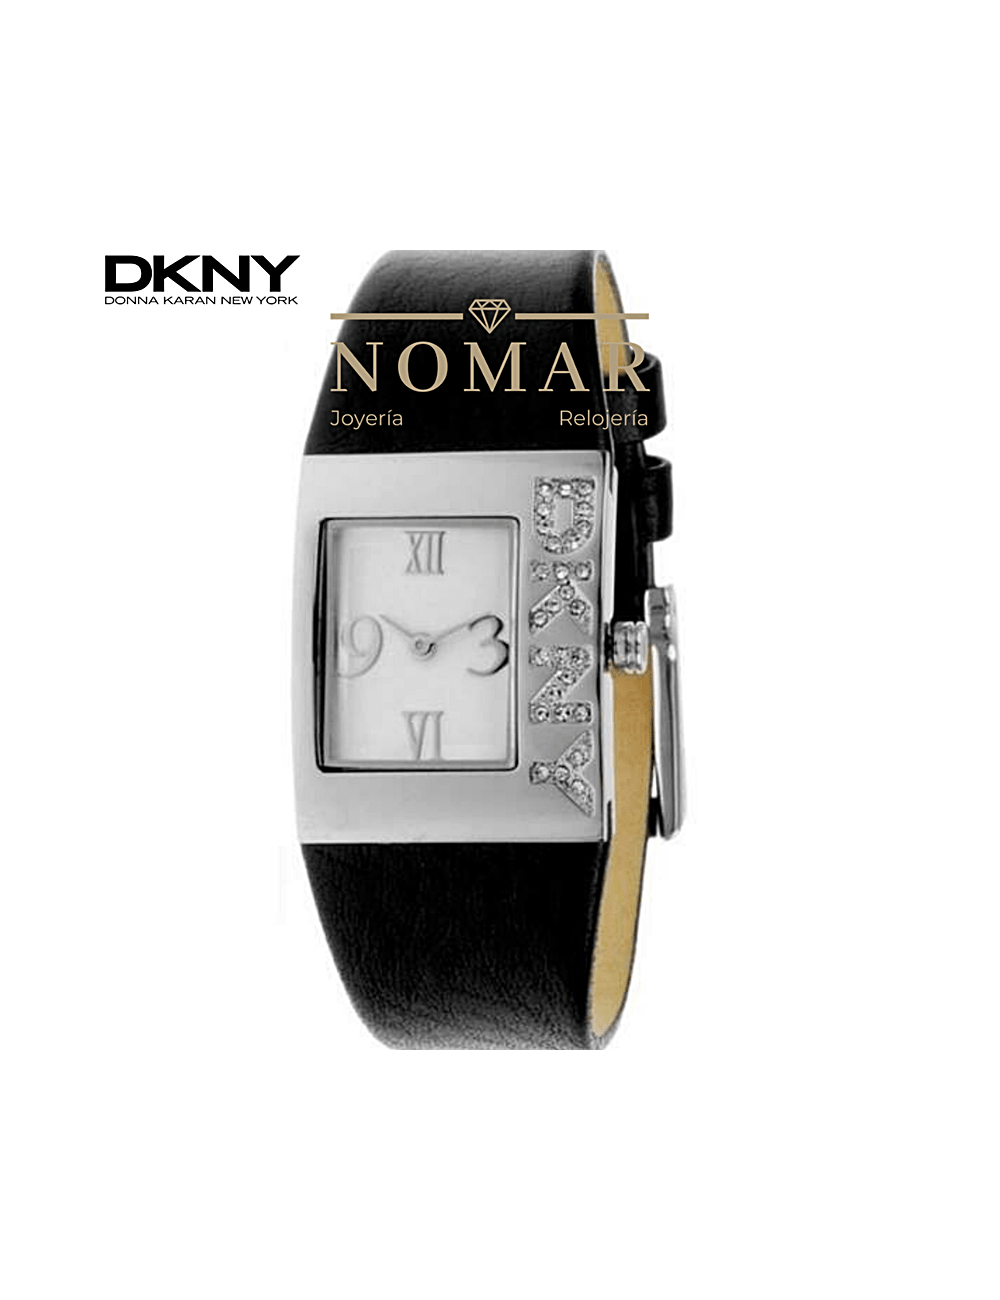 Adepto Edición pasta Reloj DKNY de mujer analógico con correa de piel negra